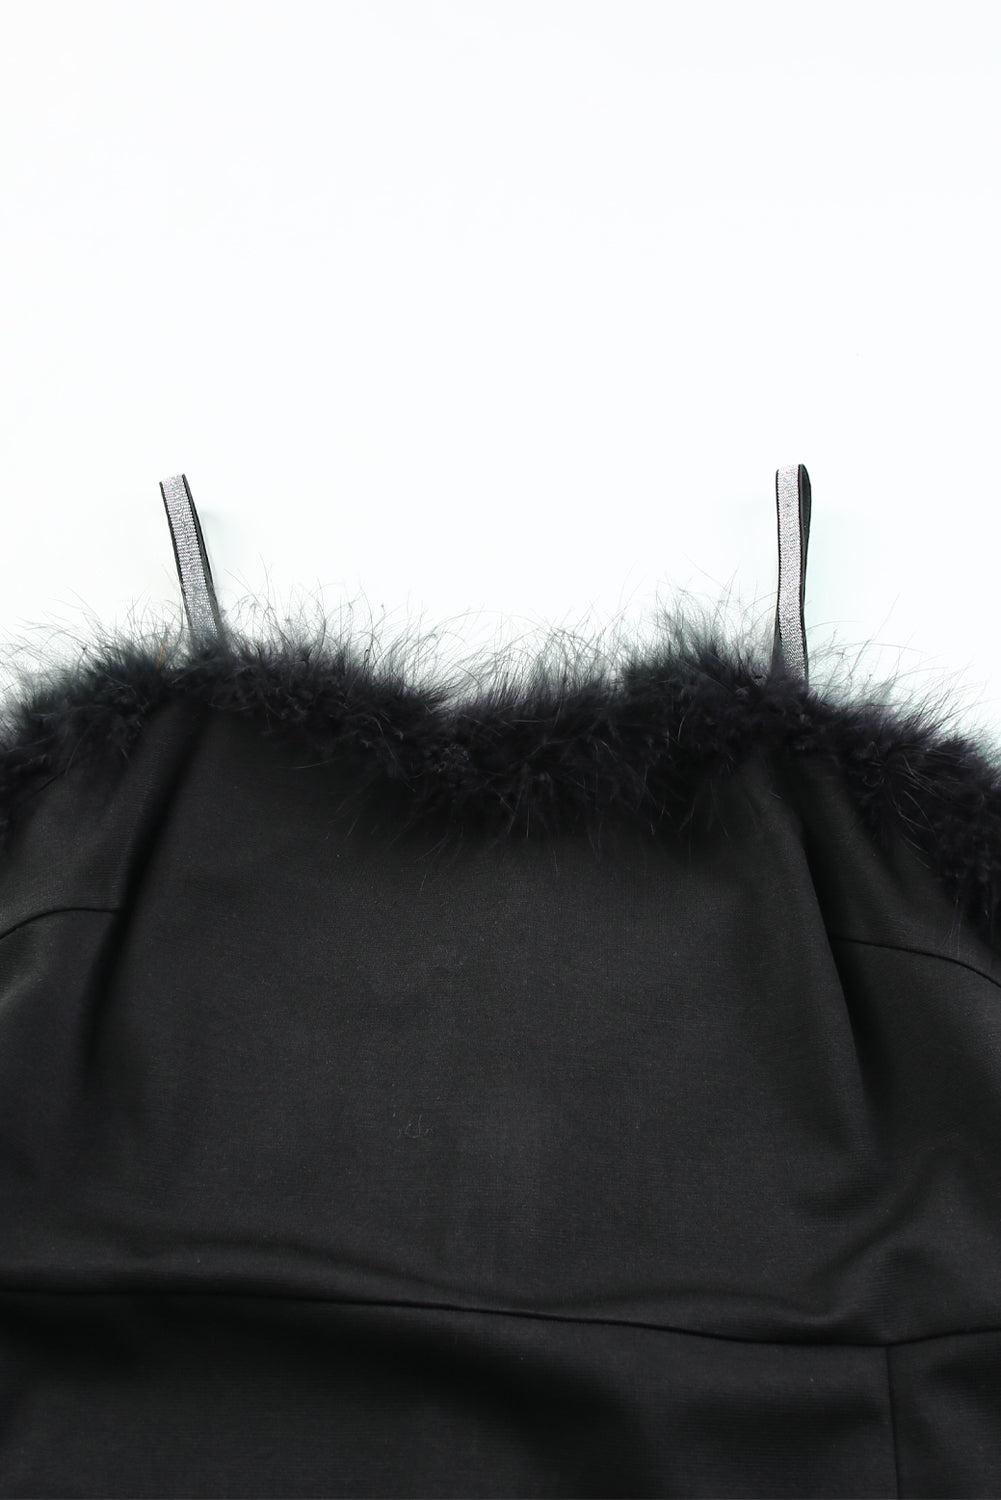 Black Rhinestone Straps Feather Trim Bodycon Midi Dress with Slit